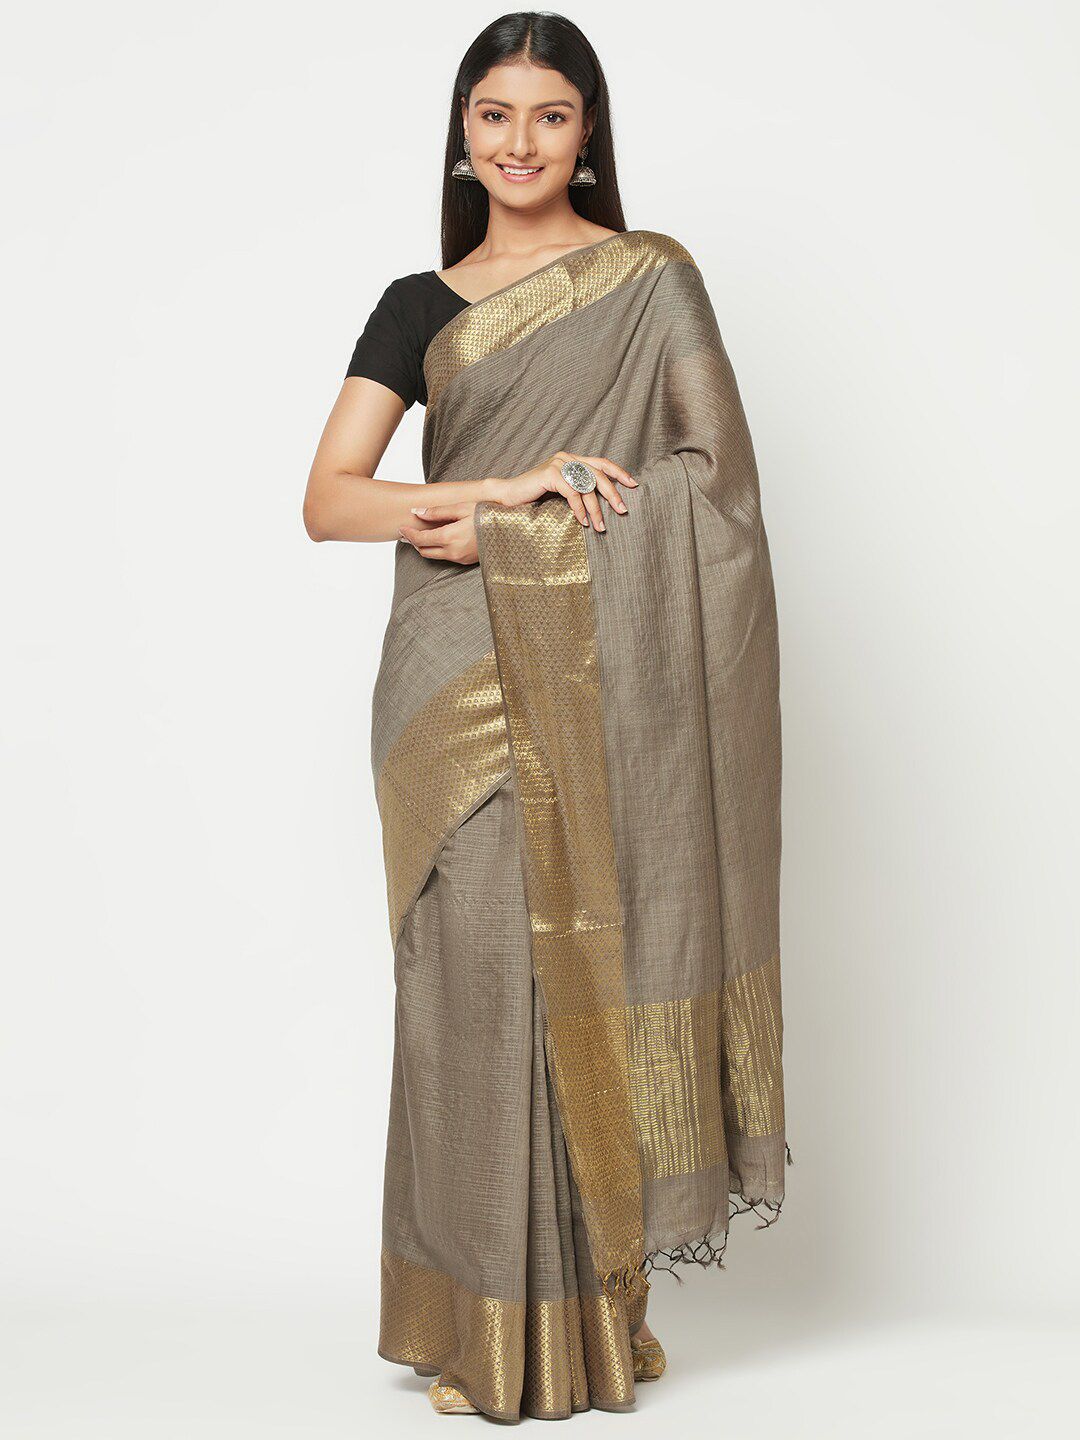 Fabindia Woman Grey & Gold-Toned Silk Tussar Saree Price in India